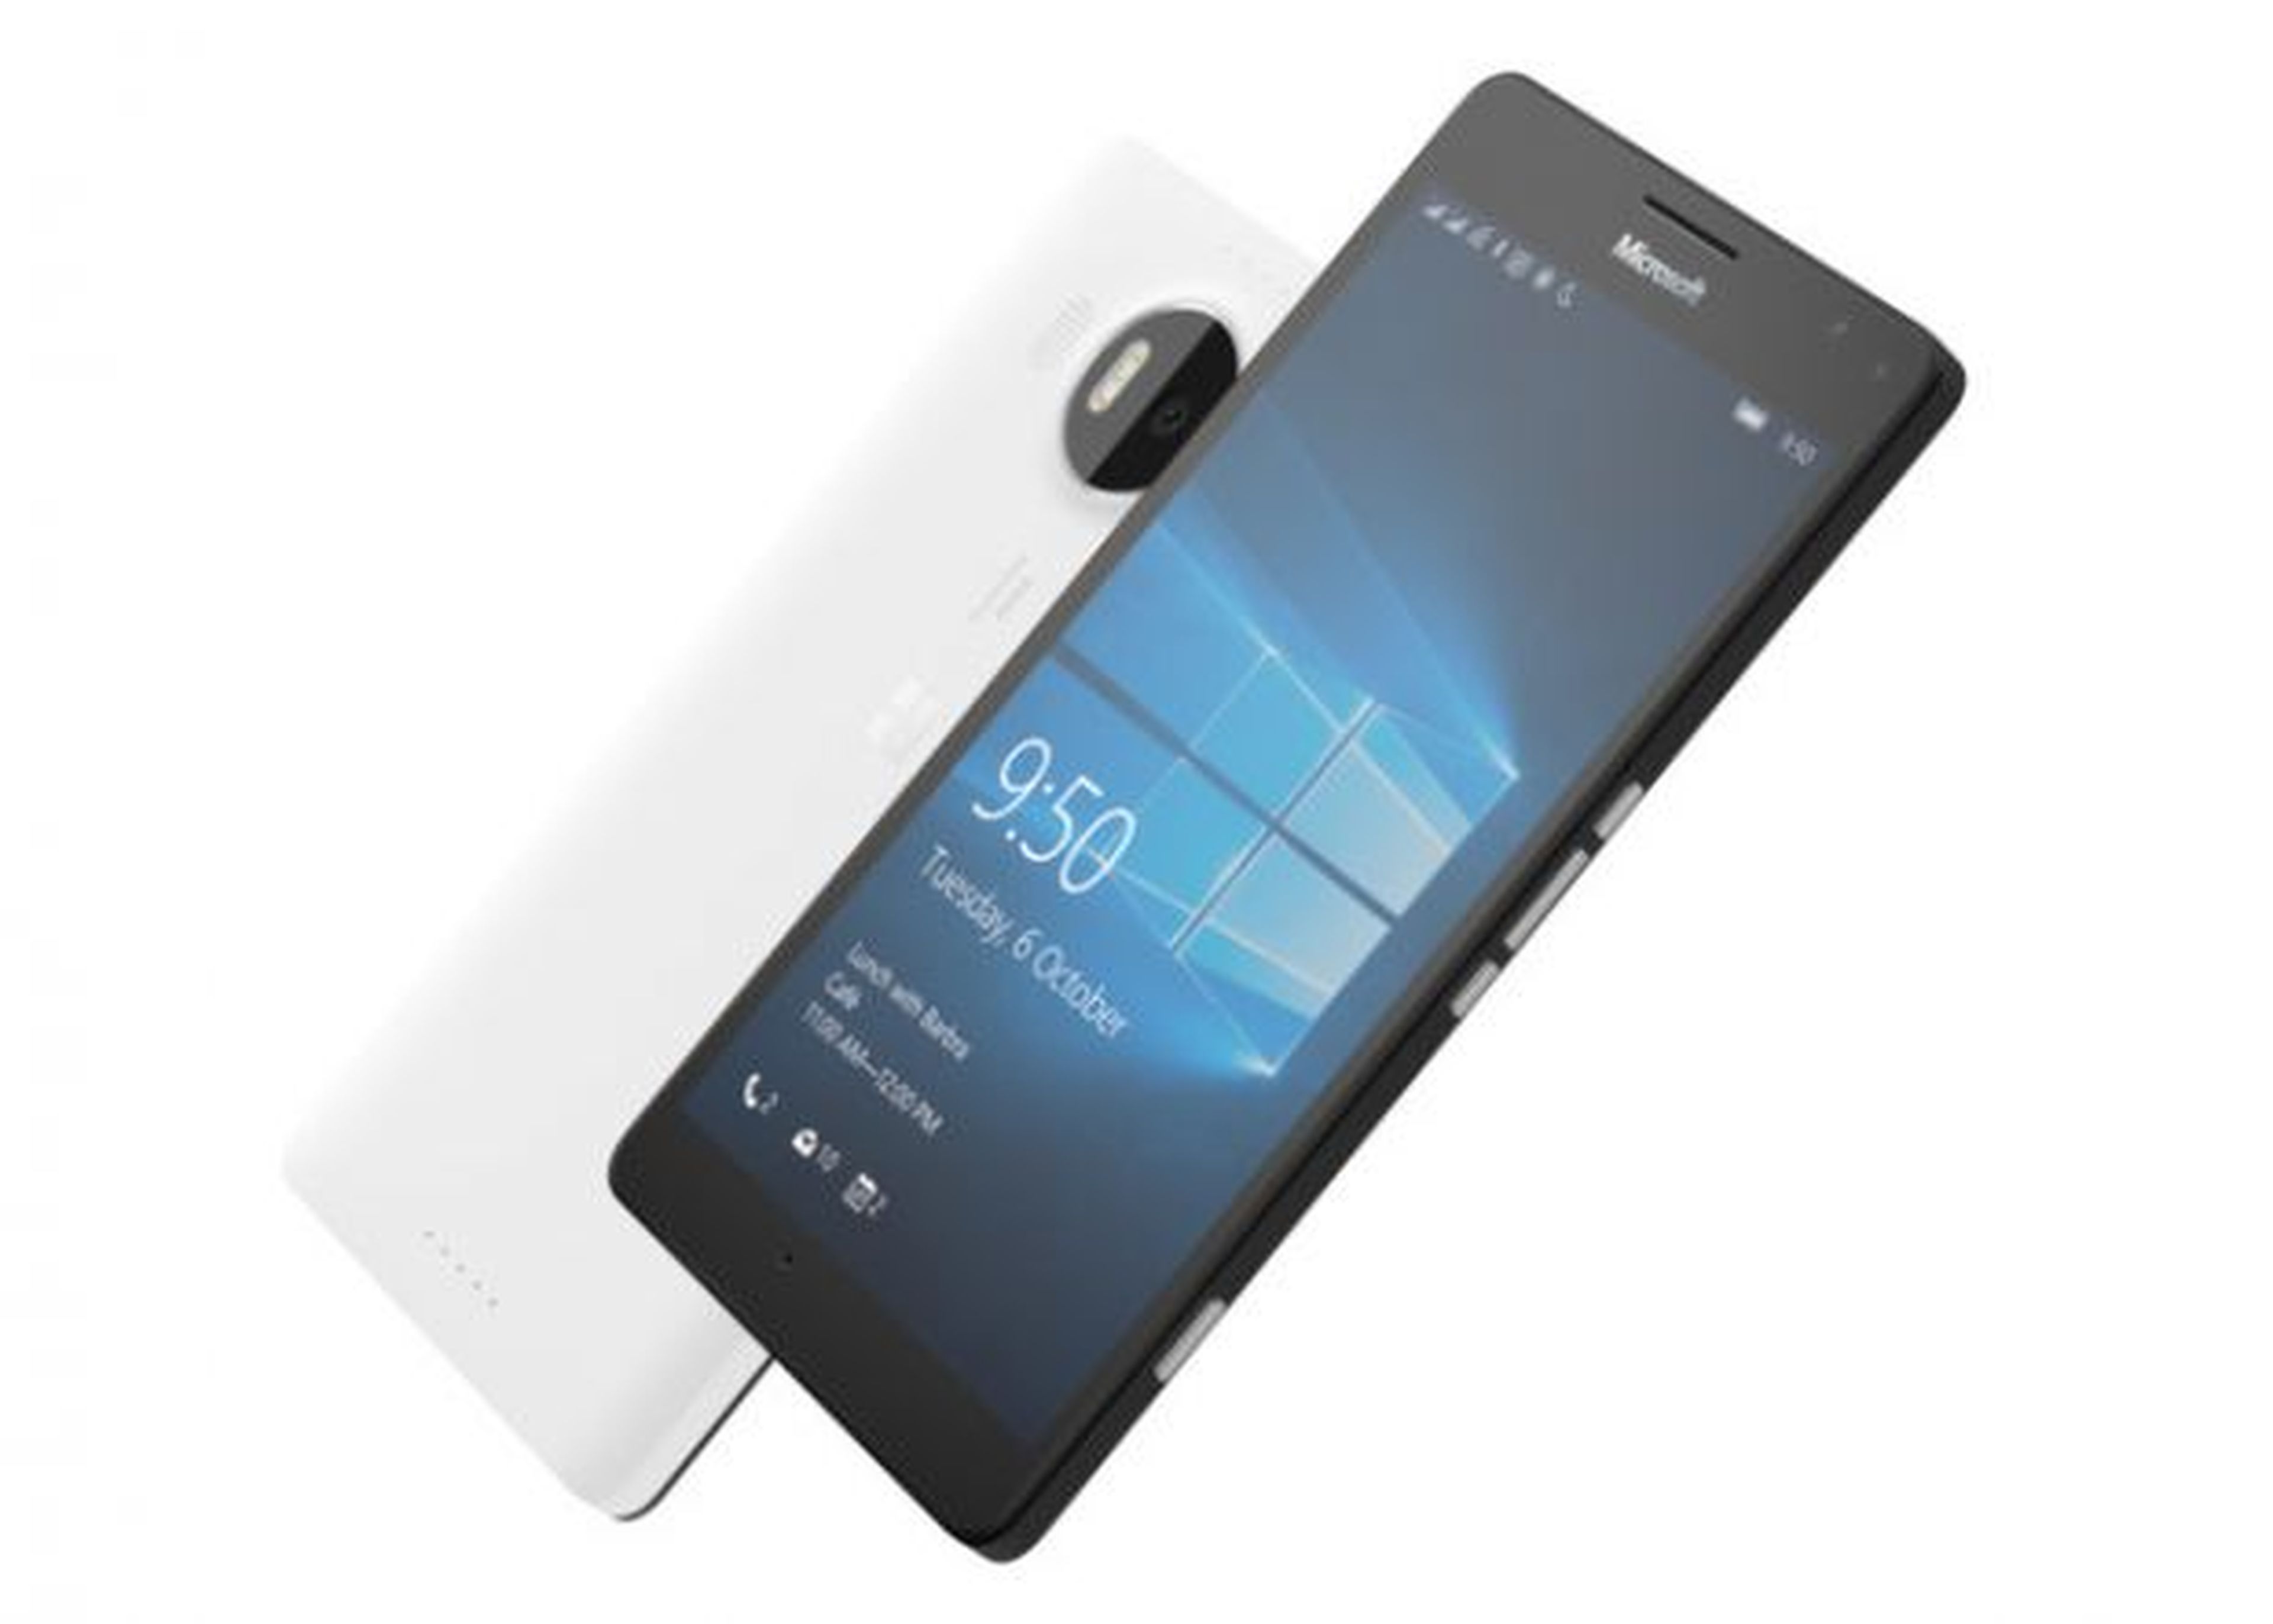 El Lumia 950 es el primer smartphone con Windows 10